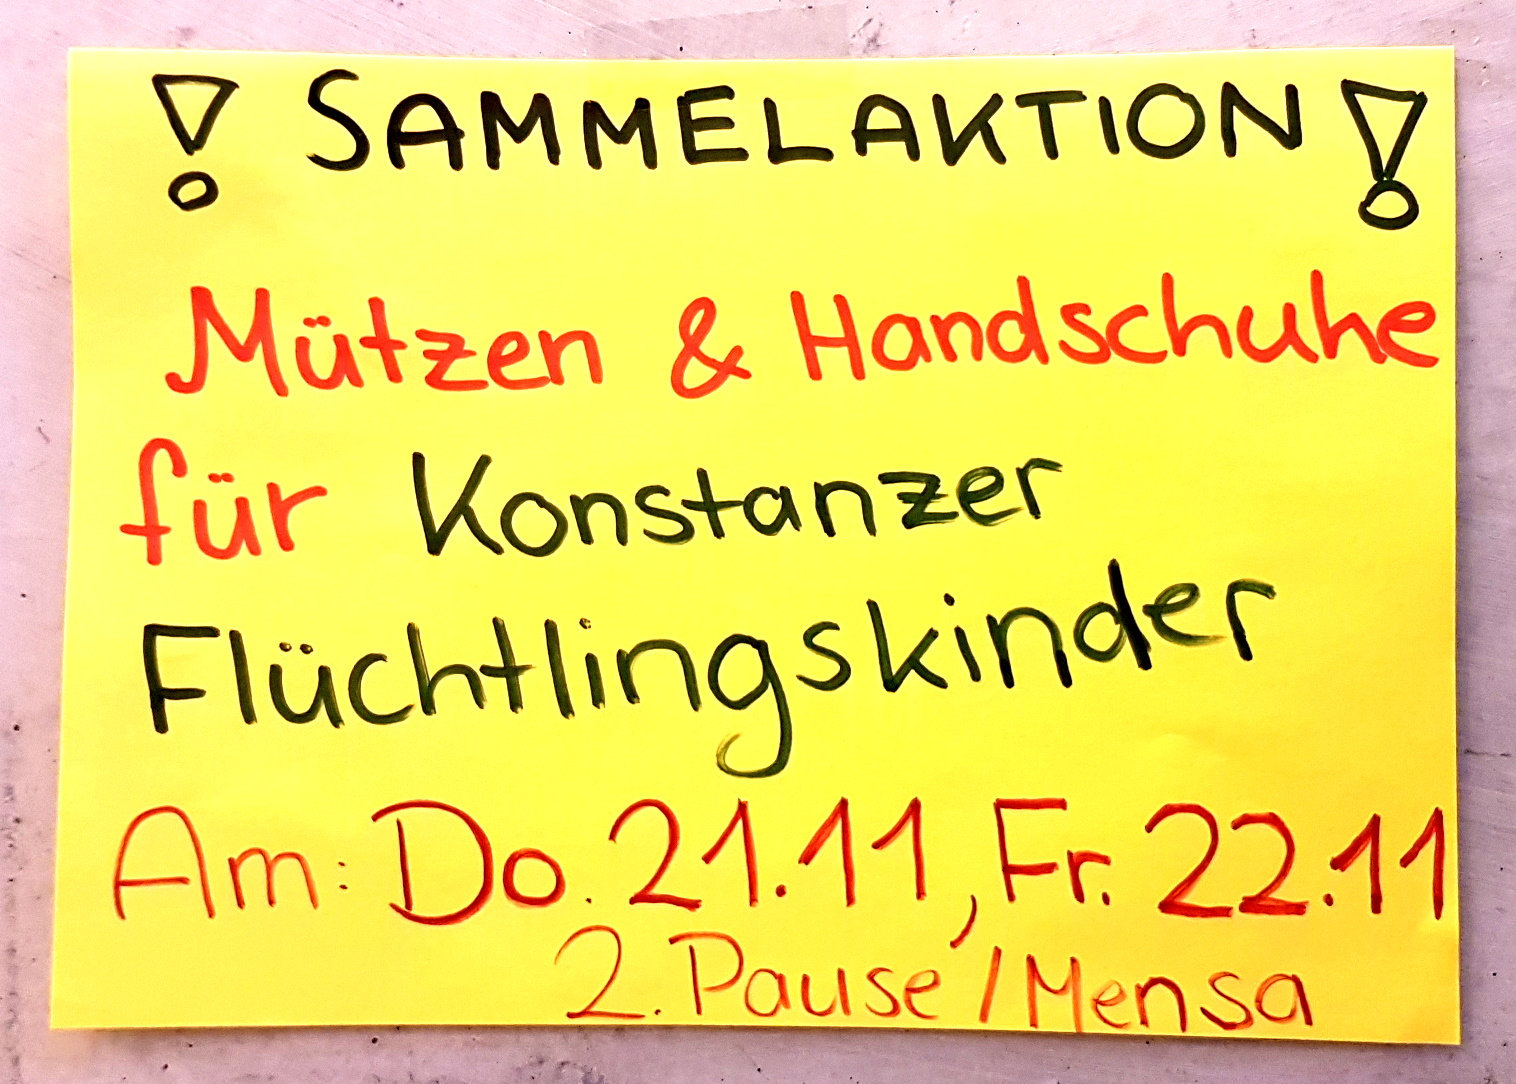 Die Amnesty-AG sammelt Mützen und Handschuhe für Konstanzer Flüchtlingskinder